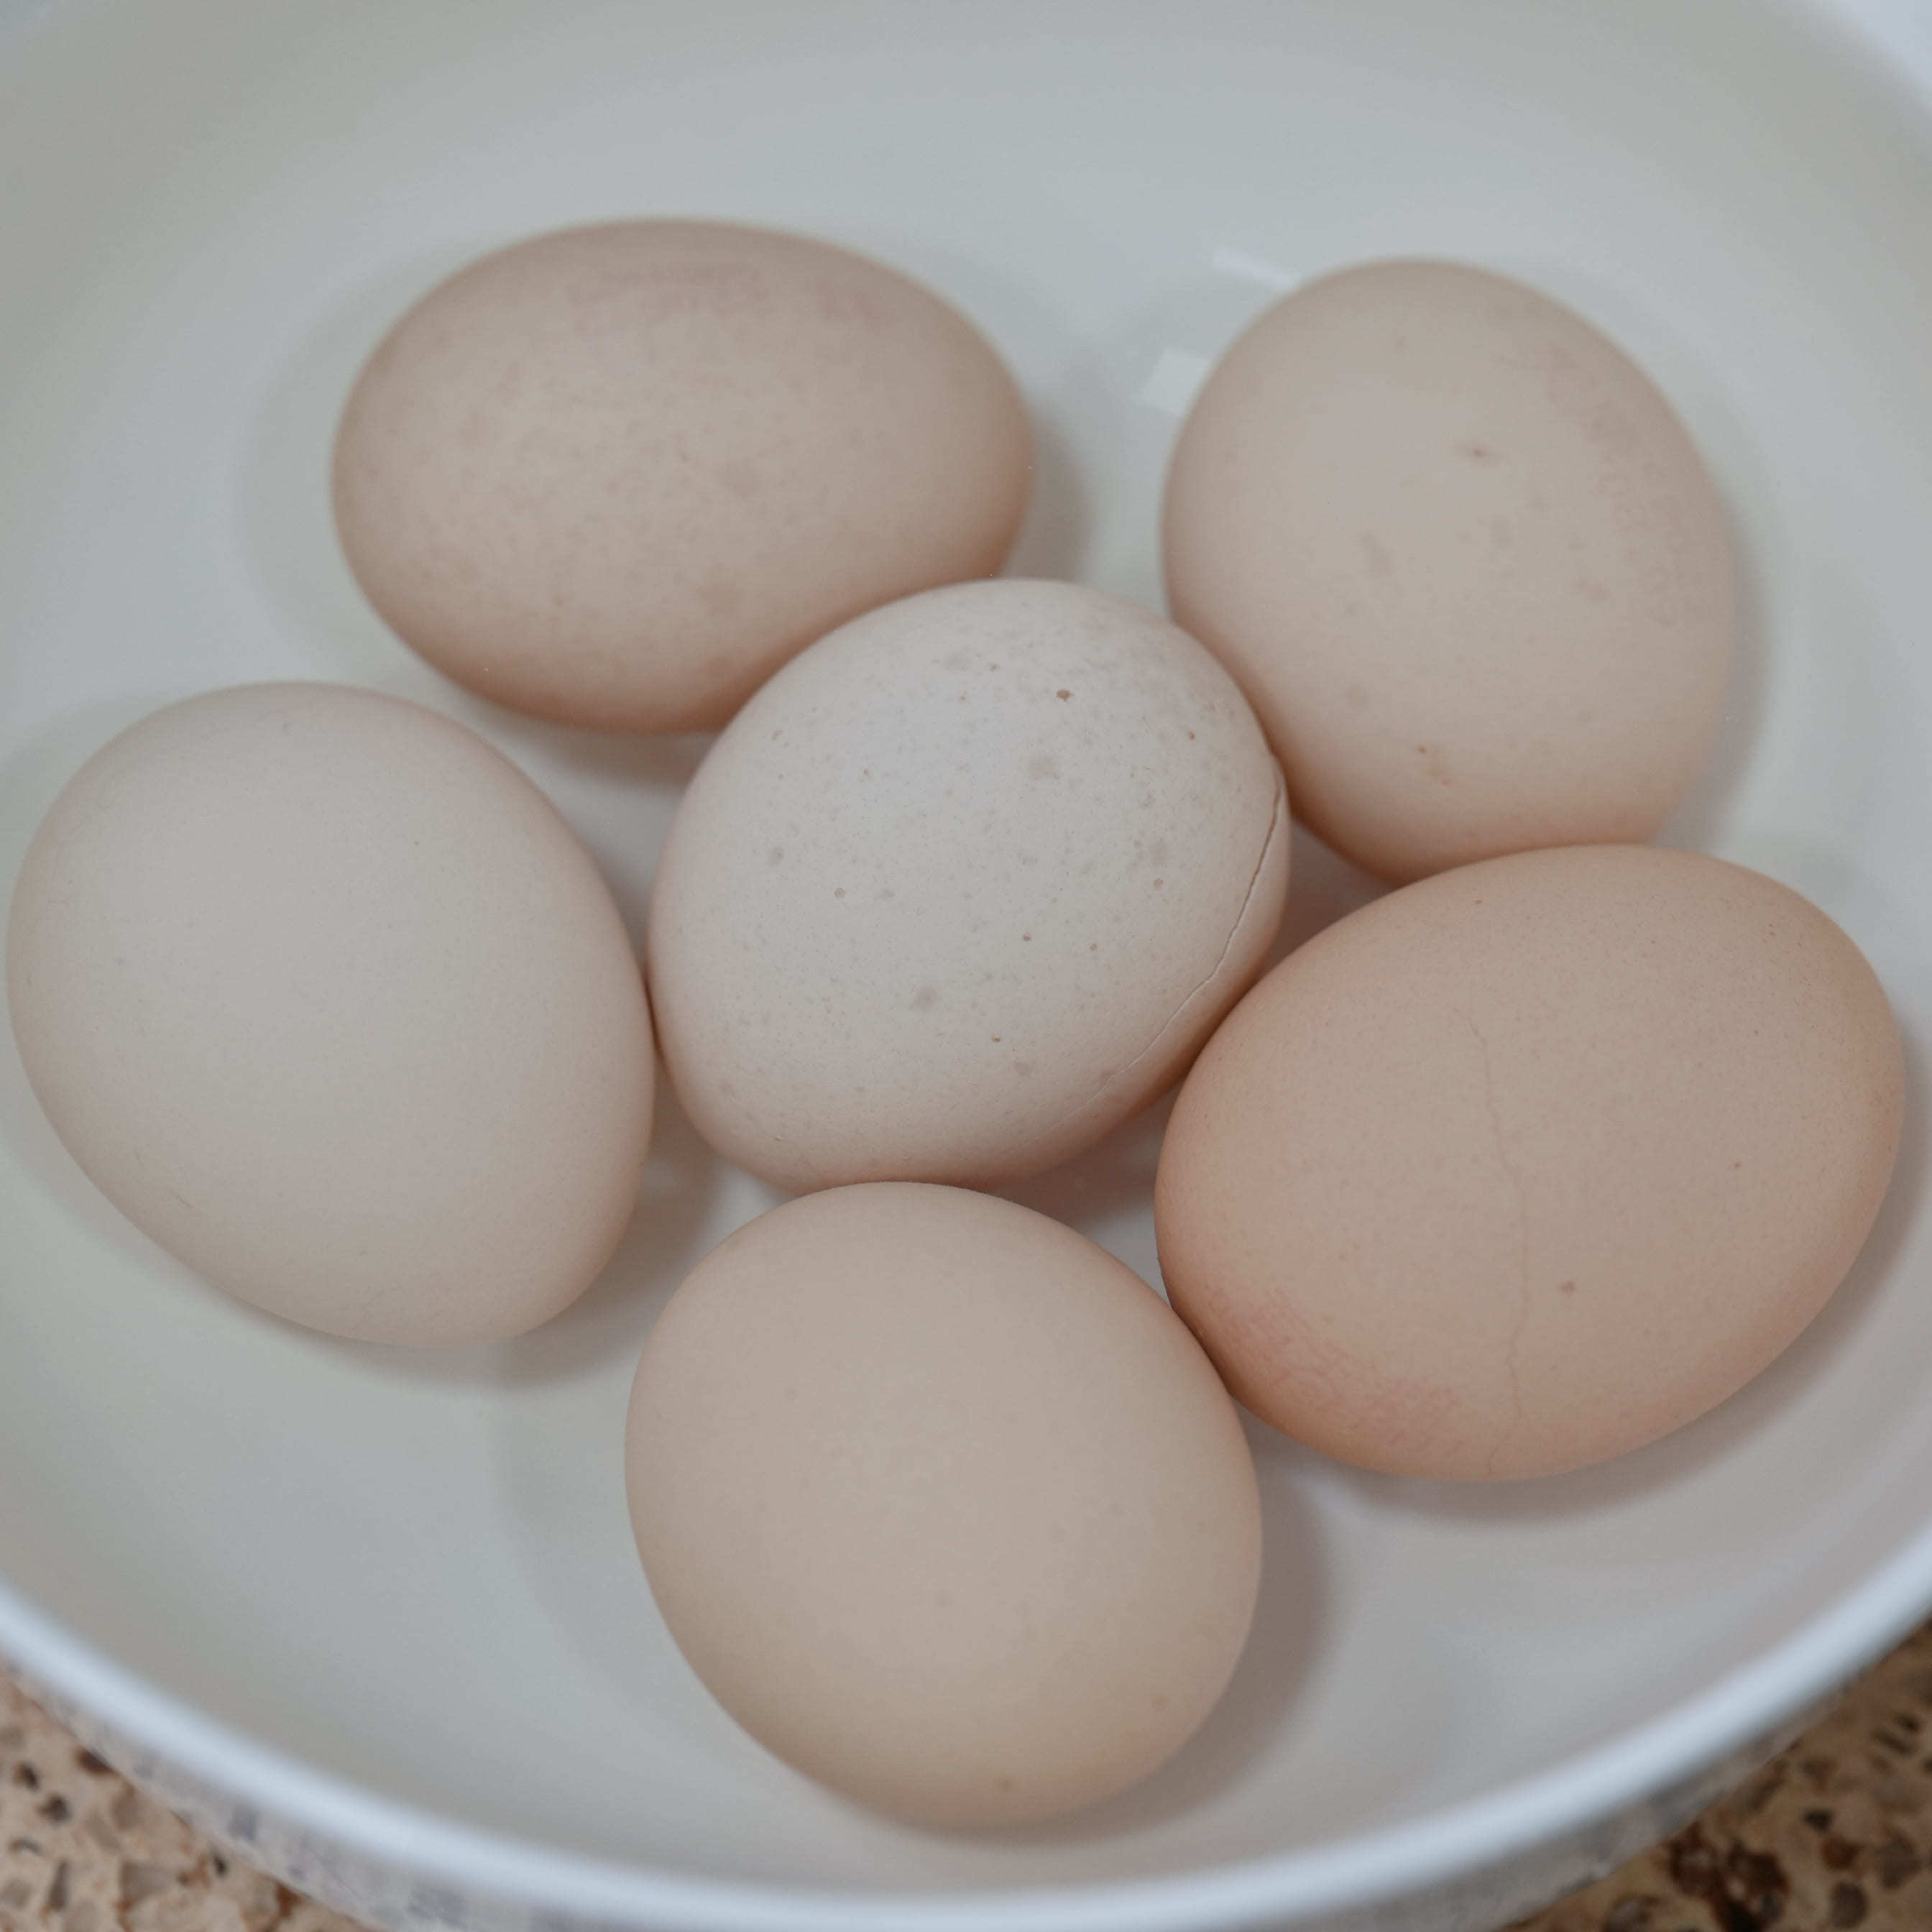 蛋黄为什么会散？蛋清为什么水化？6款鸡蛋横评告诉你答案